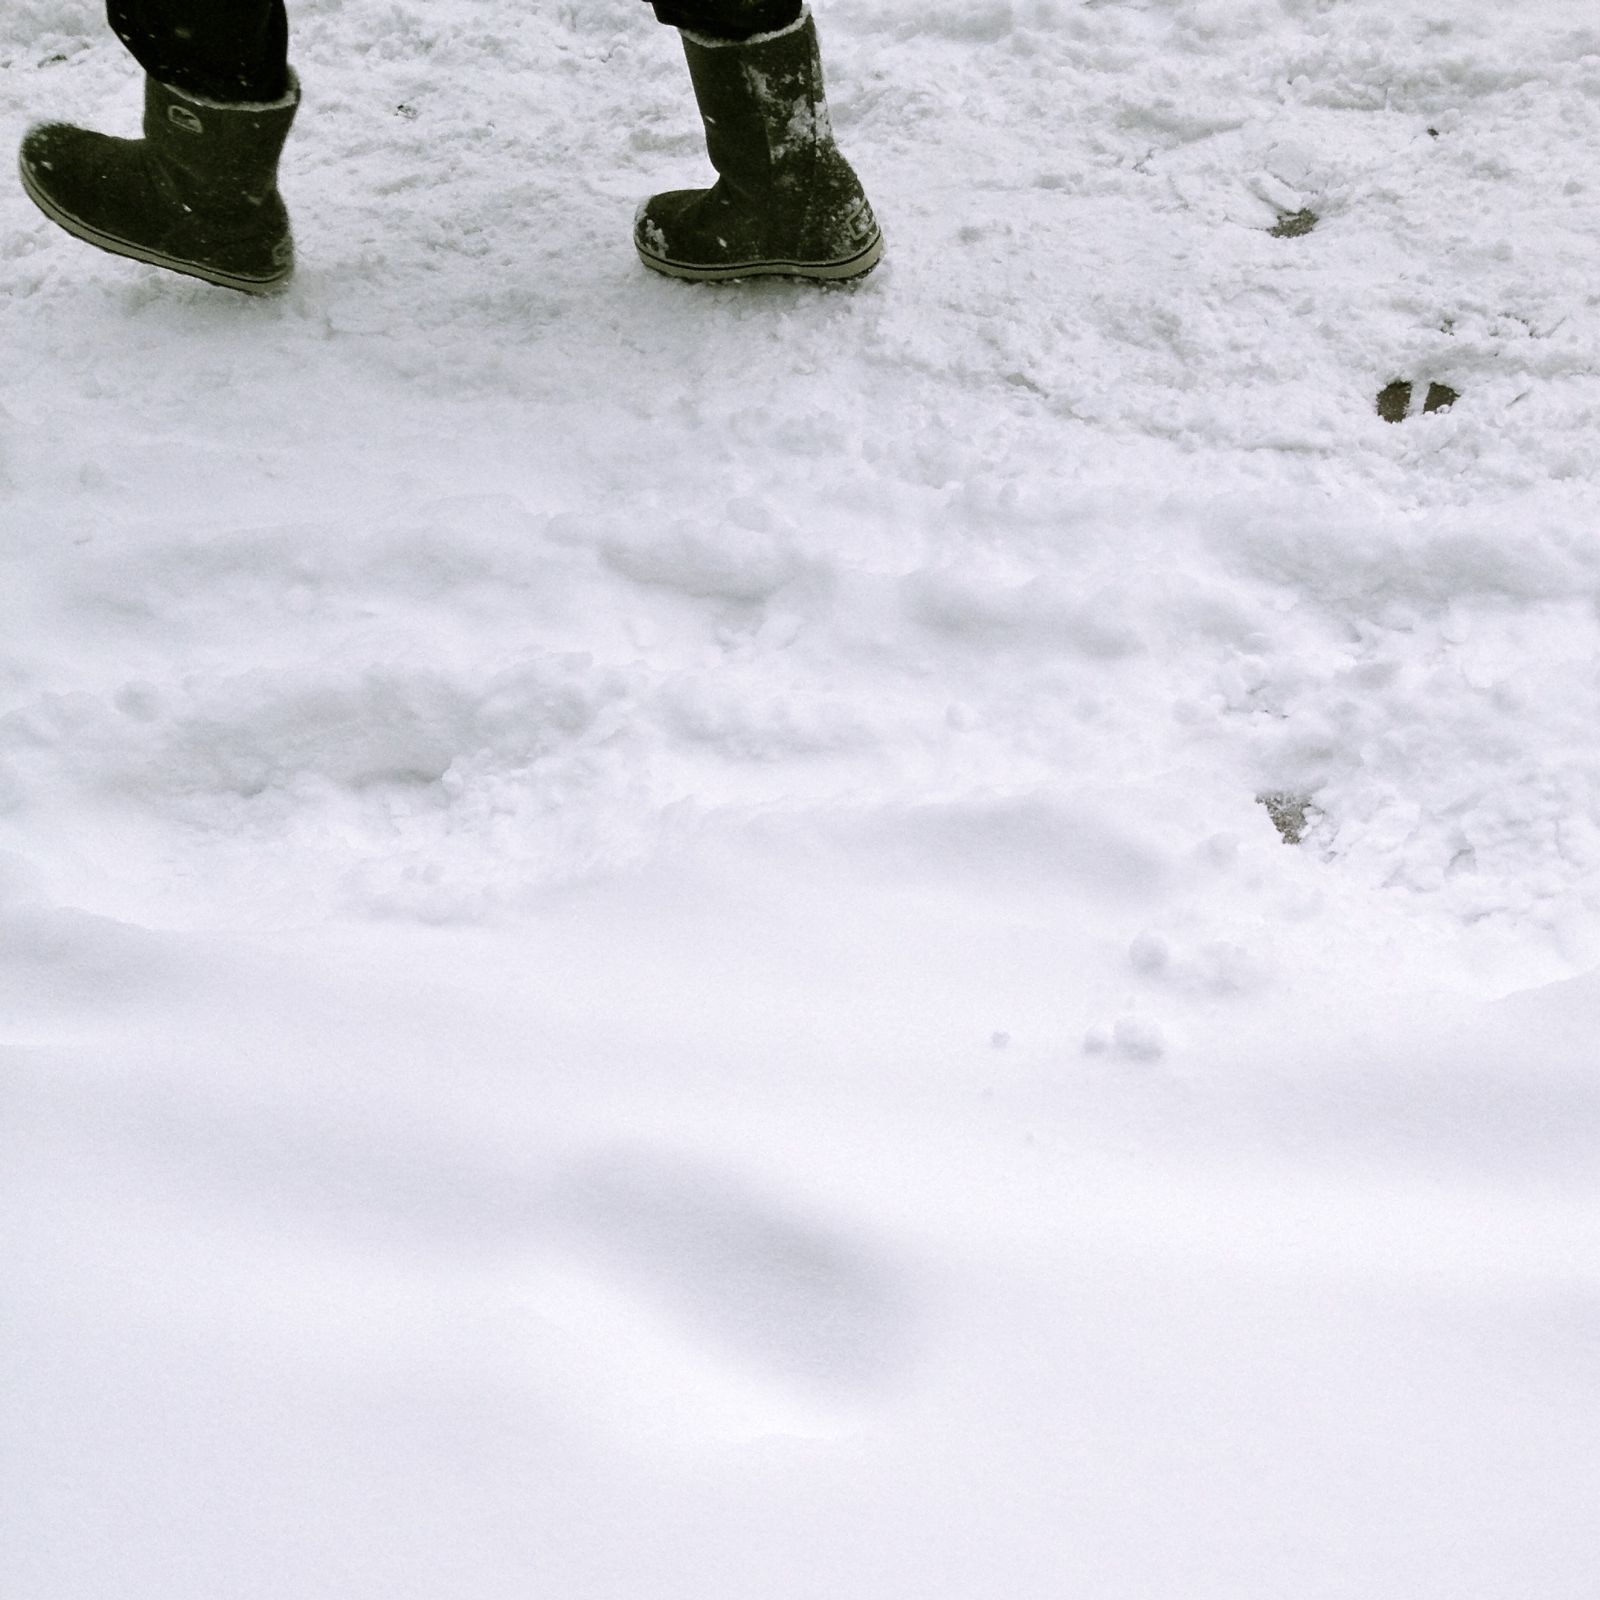 Snow Boots, Snowy Sidewalk